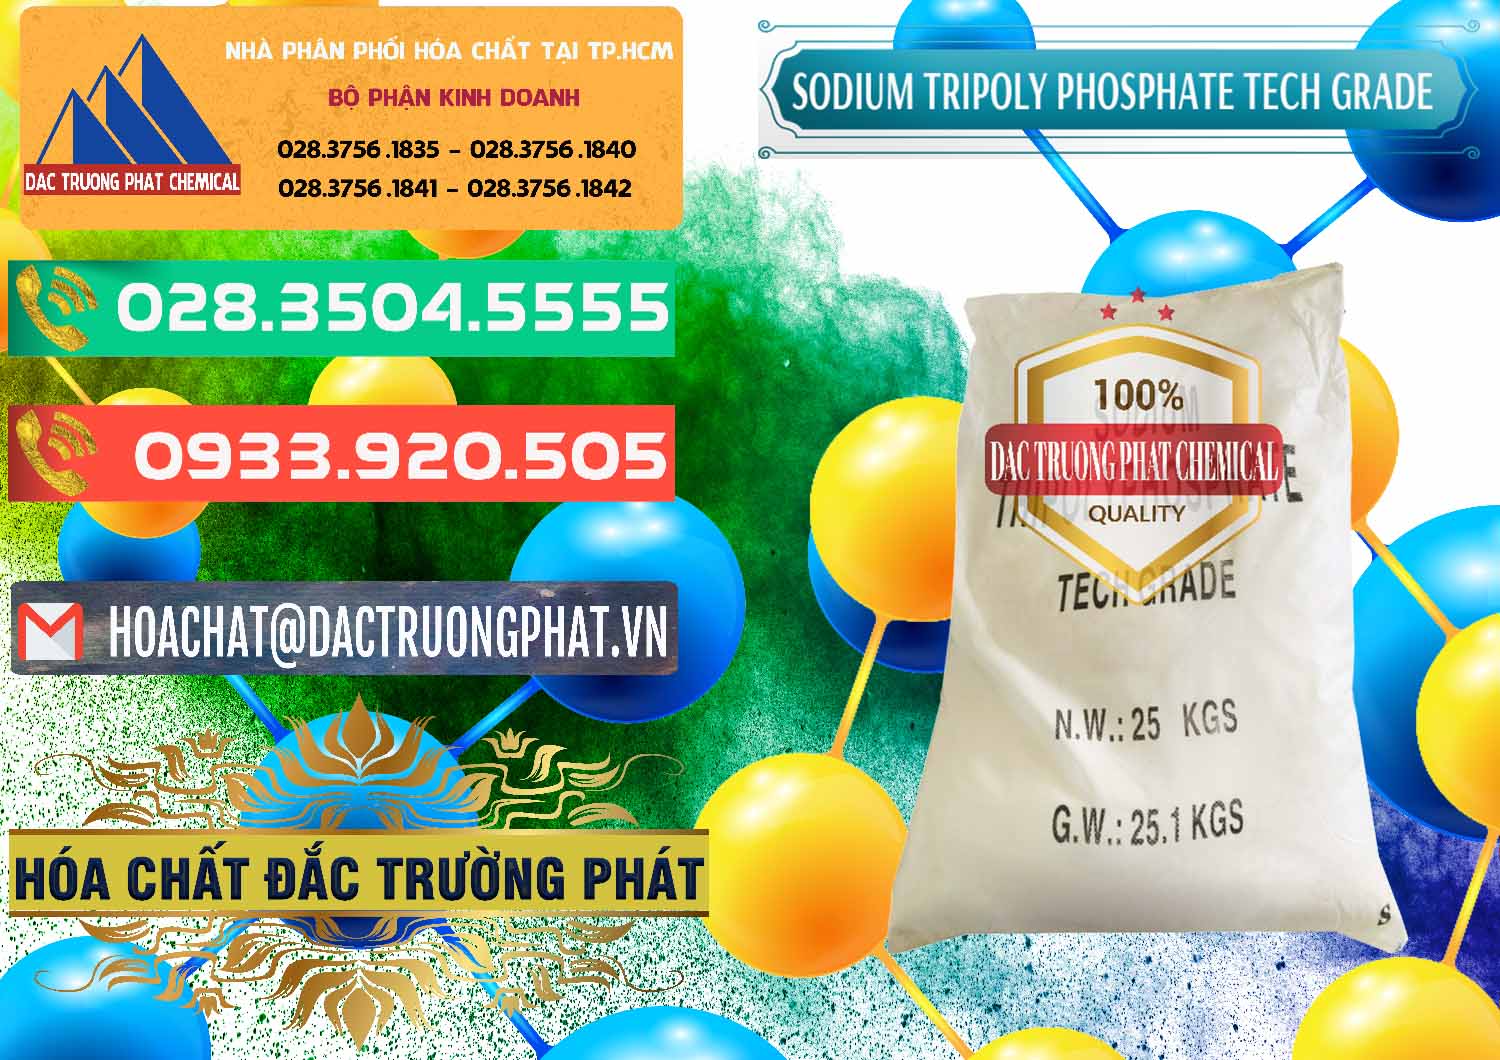 Cty chuyên cung cấp ( bán ) Sodium Tripoly Phosphate - STPP Tech Grade Trung Quốc China - 0453 - Đơn vị phân phối ( bán ) hóa chất tại TP.HCM - congtyhoachat.com.vn